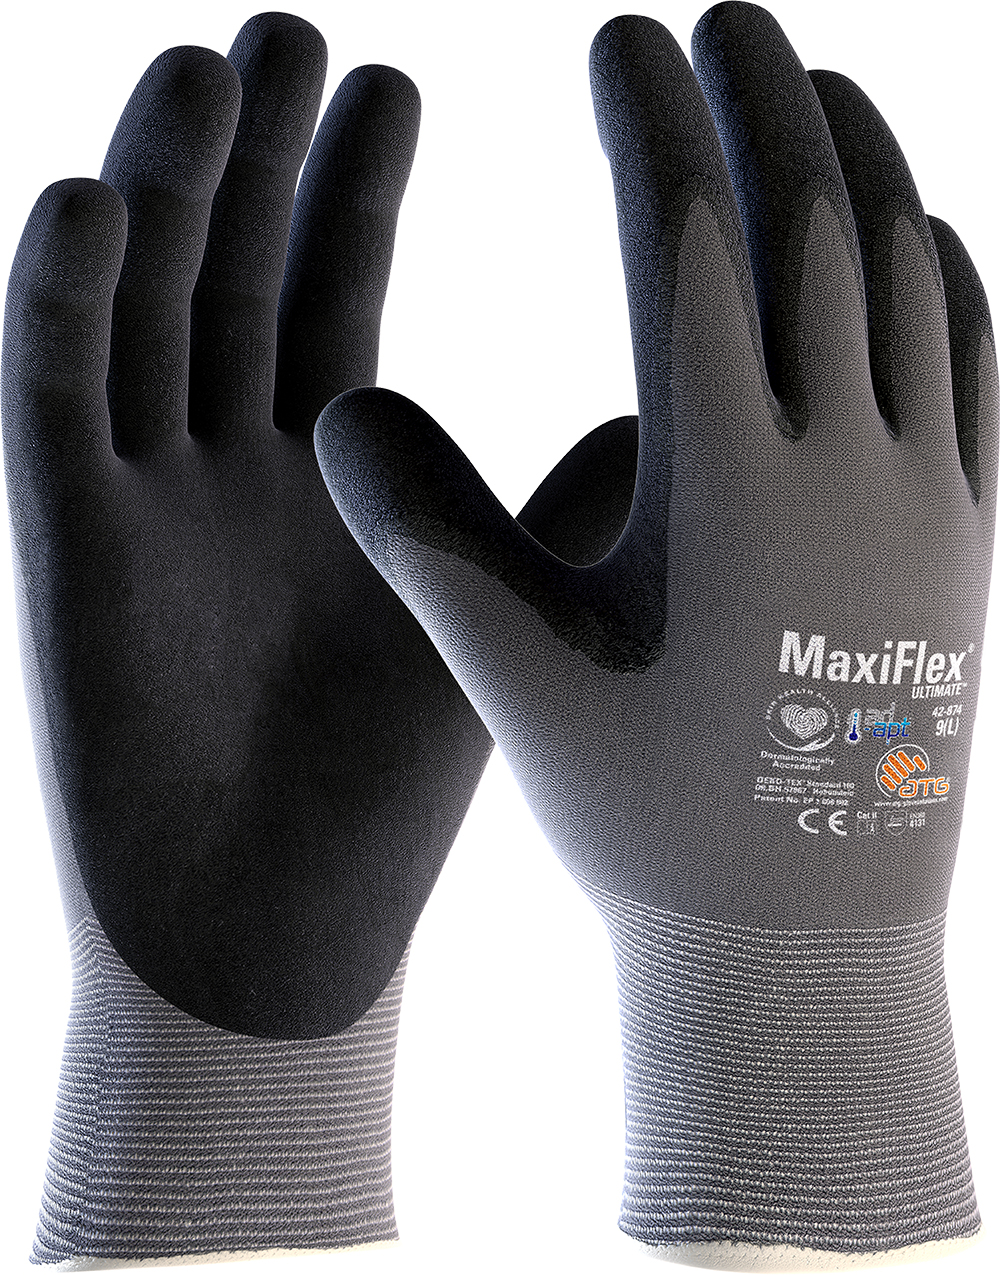 Handschoen ATG MaxiFlex Ultimate 42-874 AD-APT